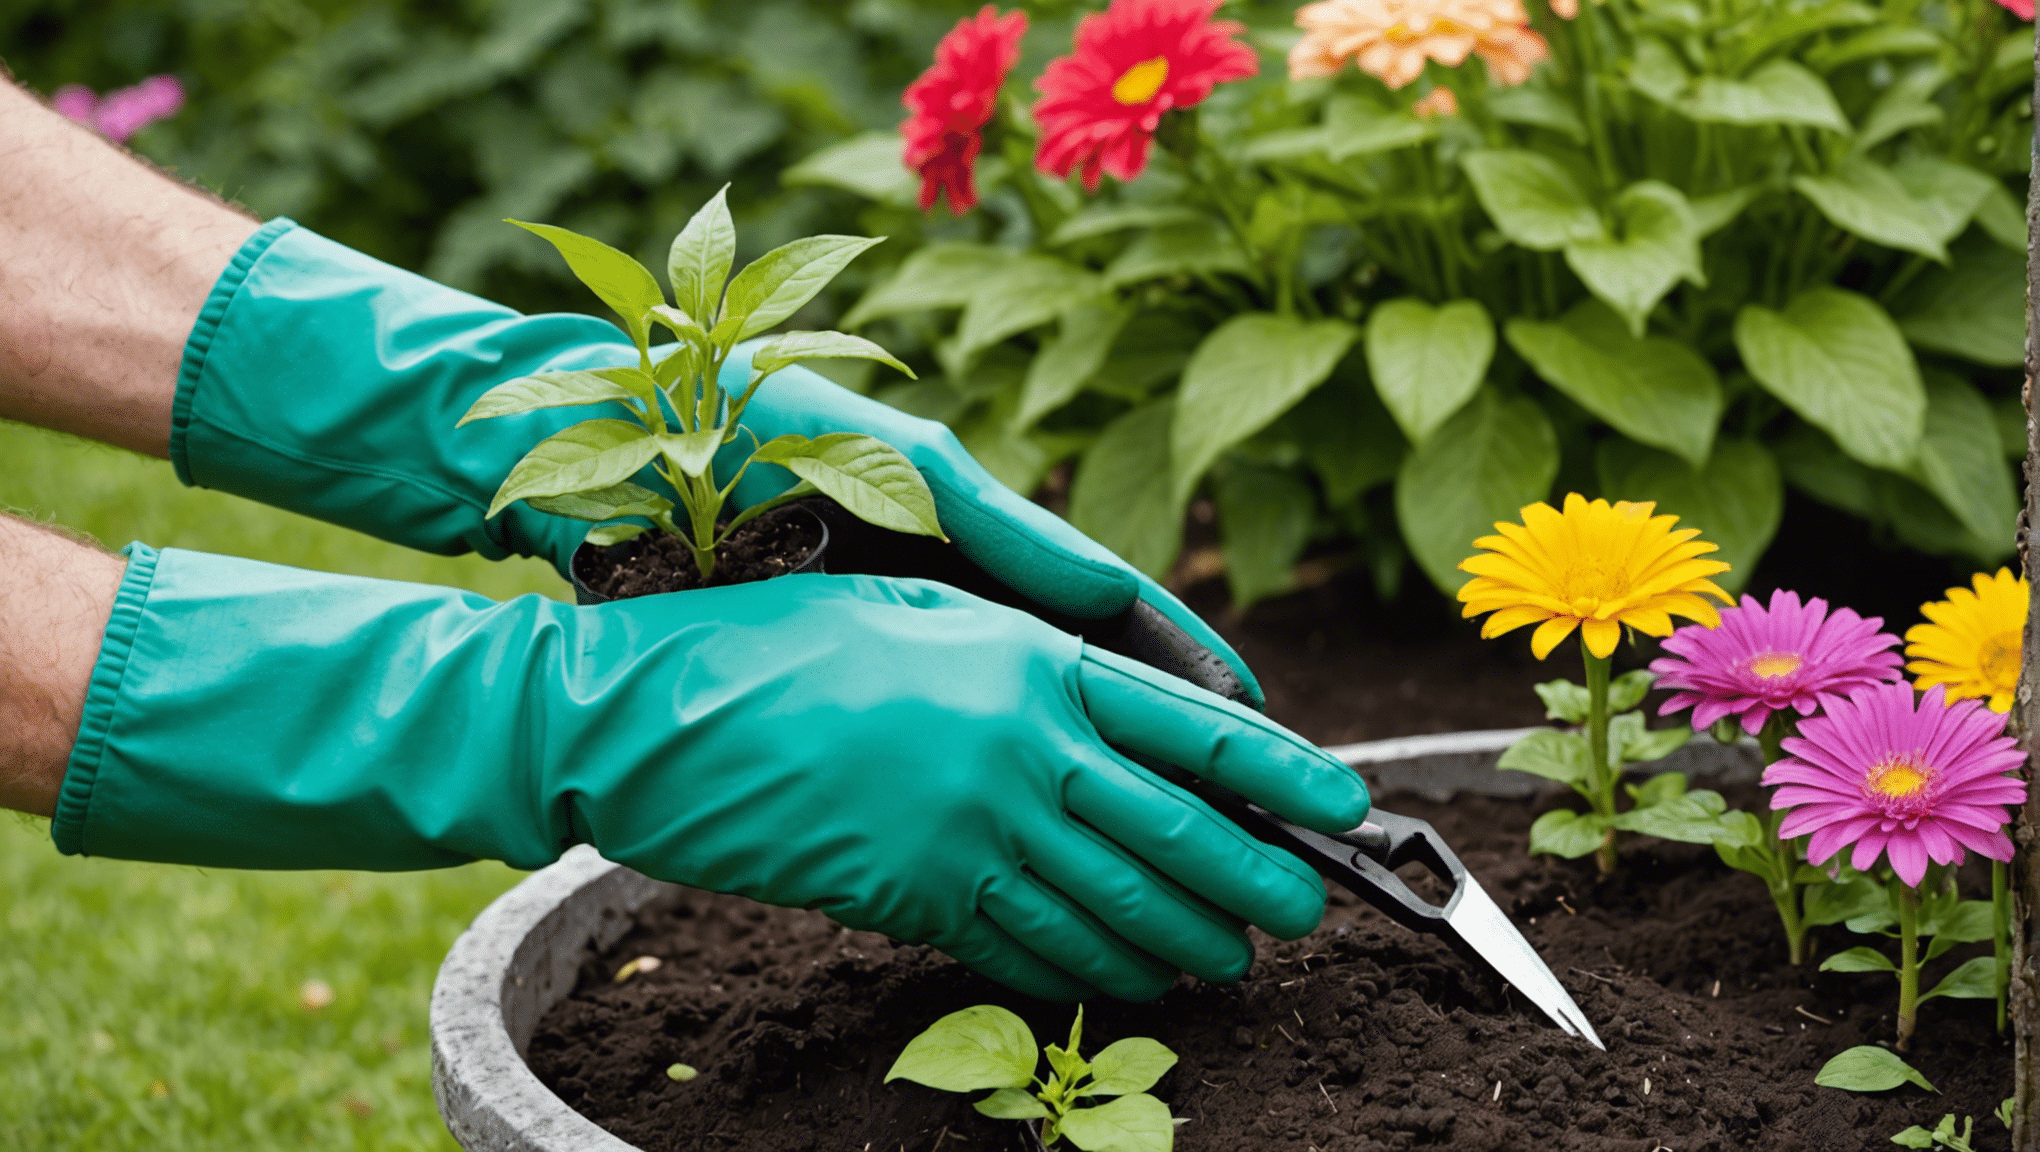 objevte pohodlí zahradnických rukavic s drápy a proměňte své zahradnické zážitky snadno a efektivně.